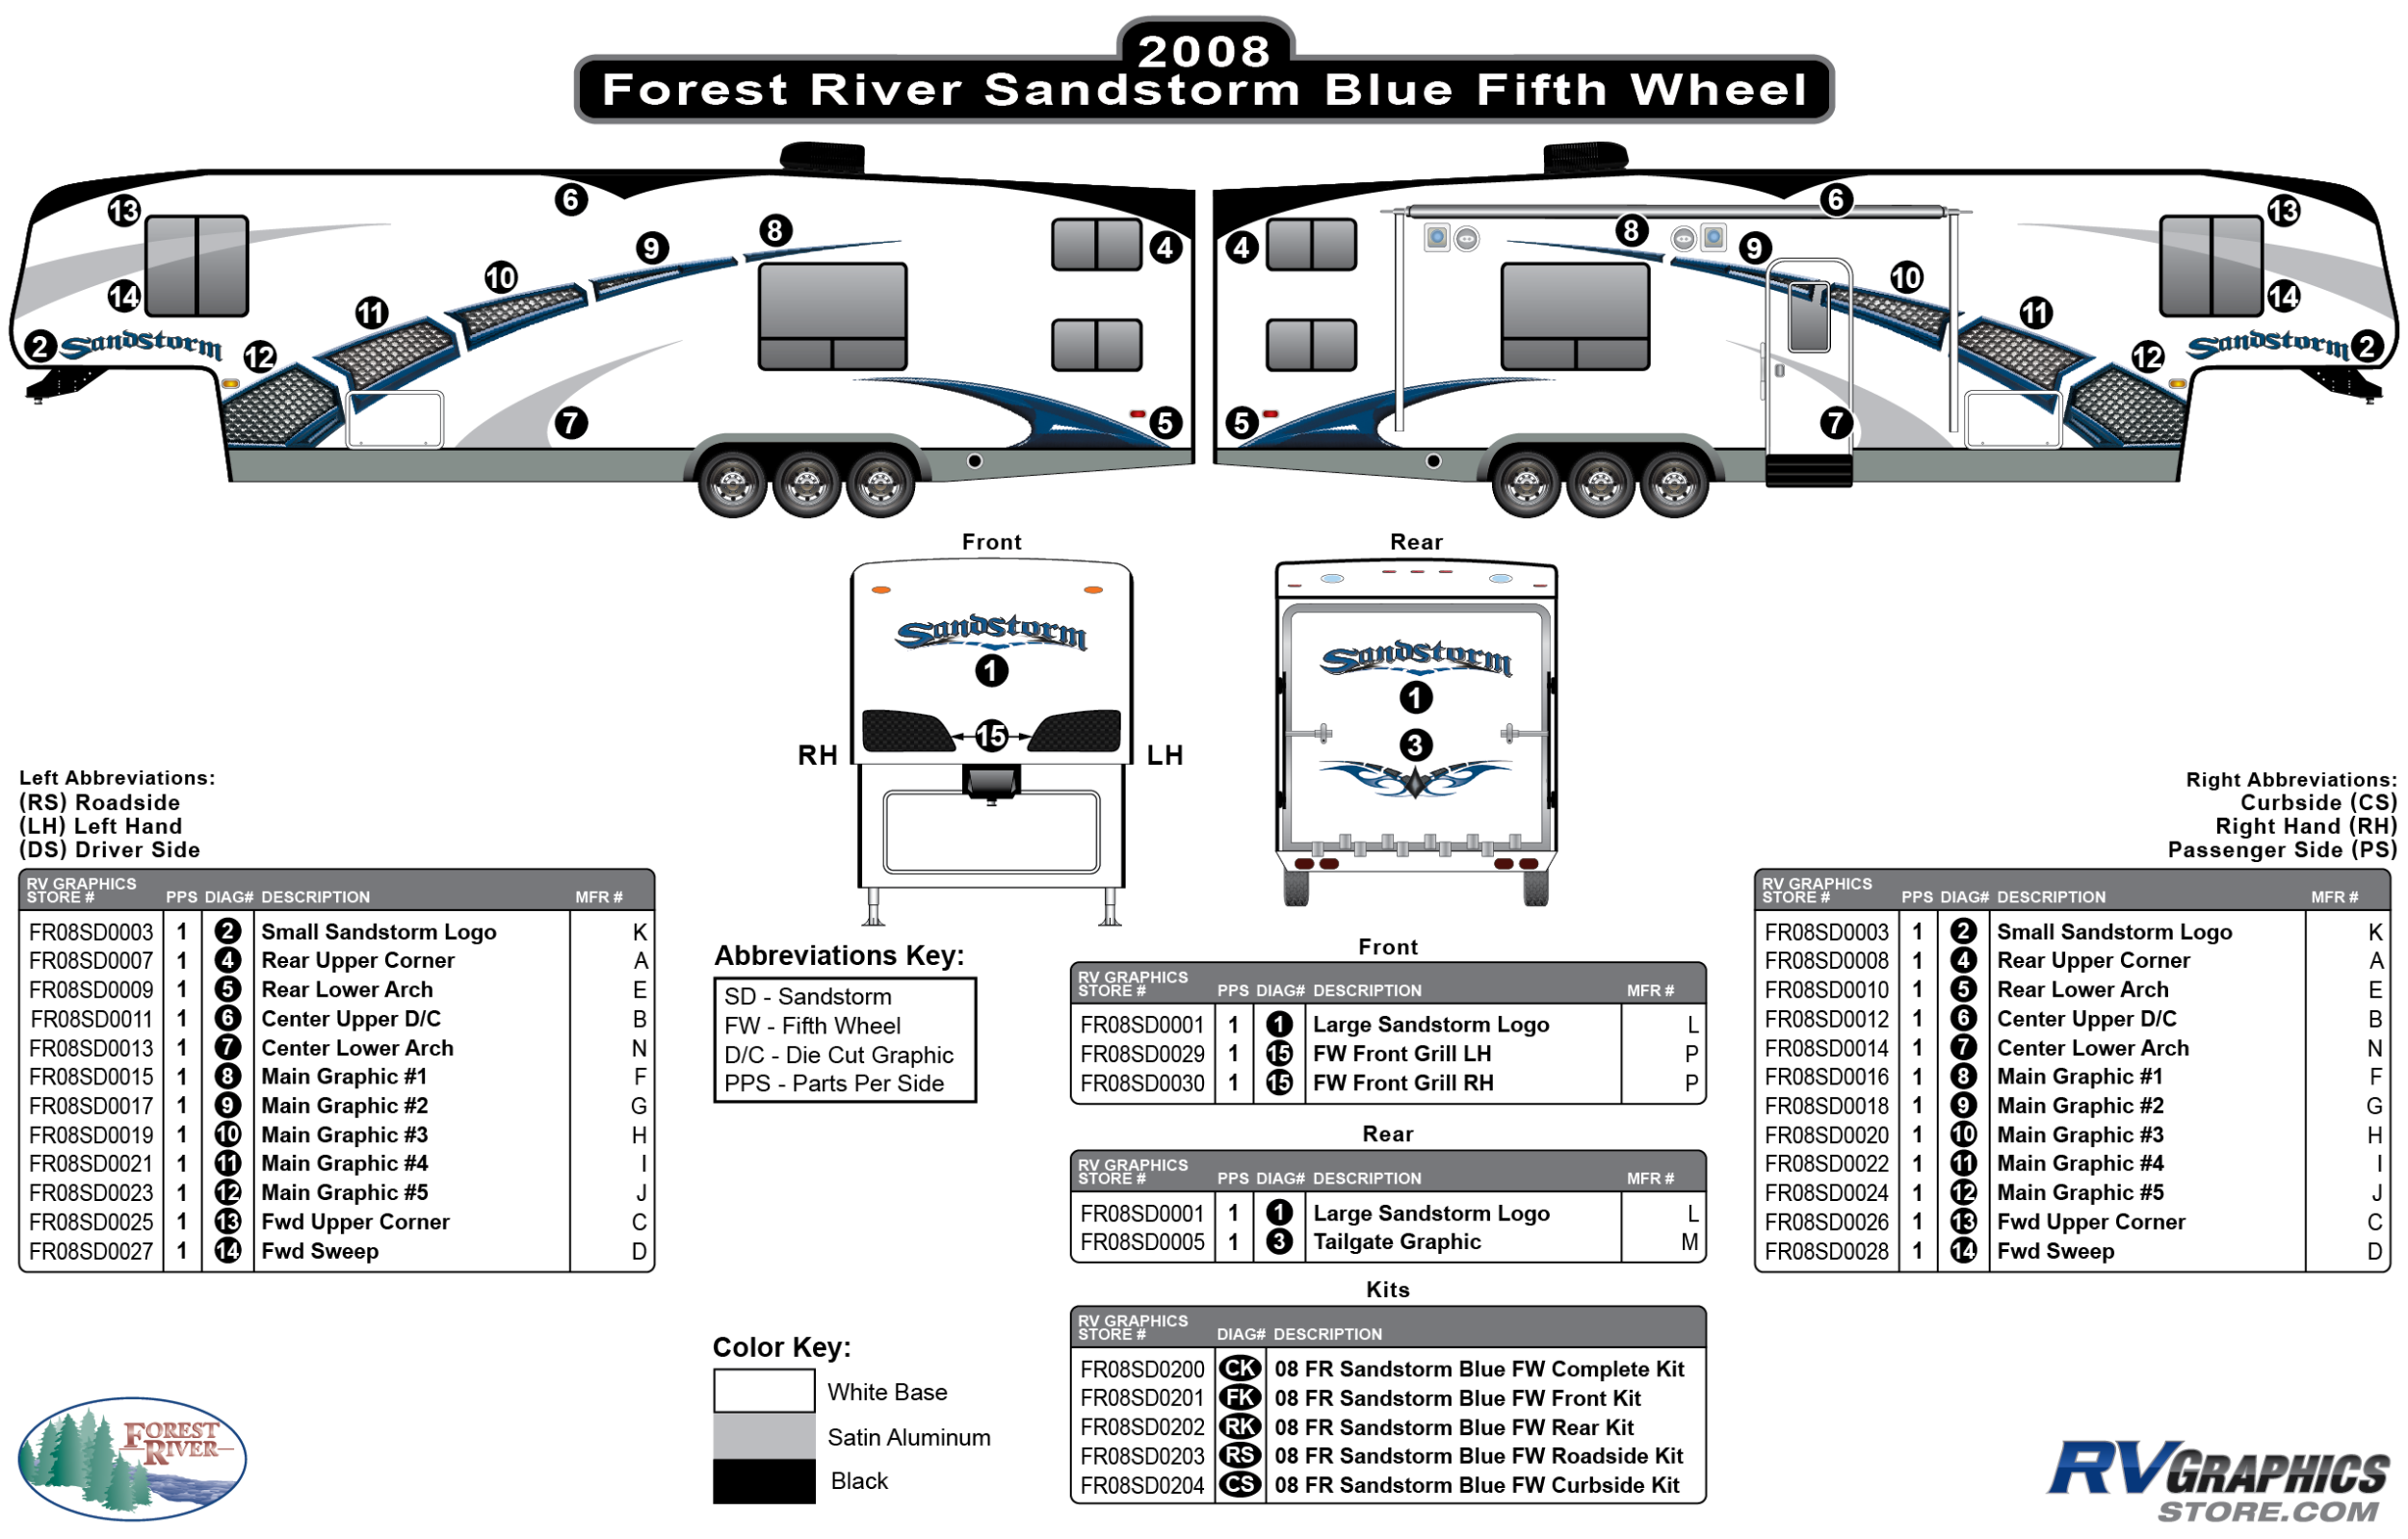 Sandstorm - 2008-2009 Sandstorm FW-Fifth Wheel Blue